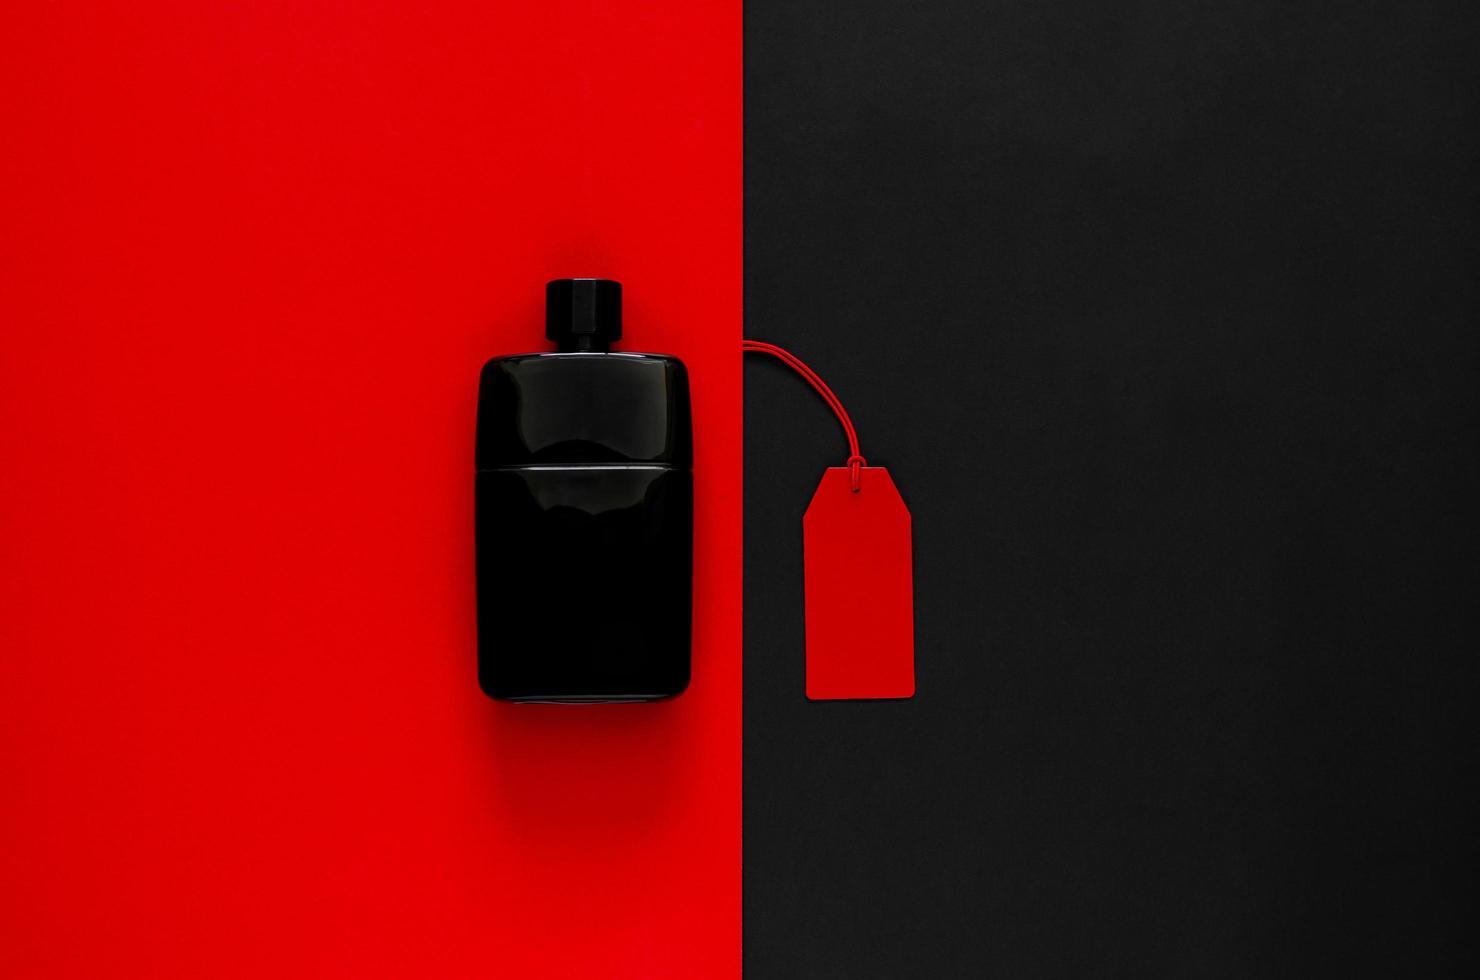 etiquetas de precios rojas con productos de descuento sobre fondo rojo y negro. concepto de viernes negro. foto